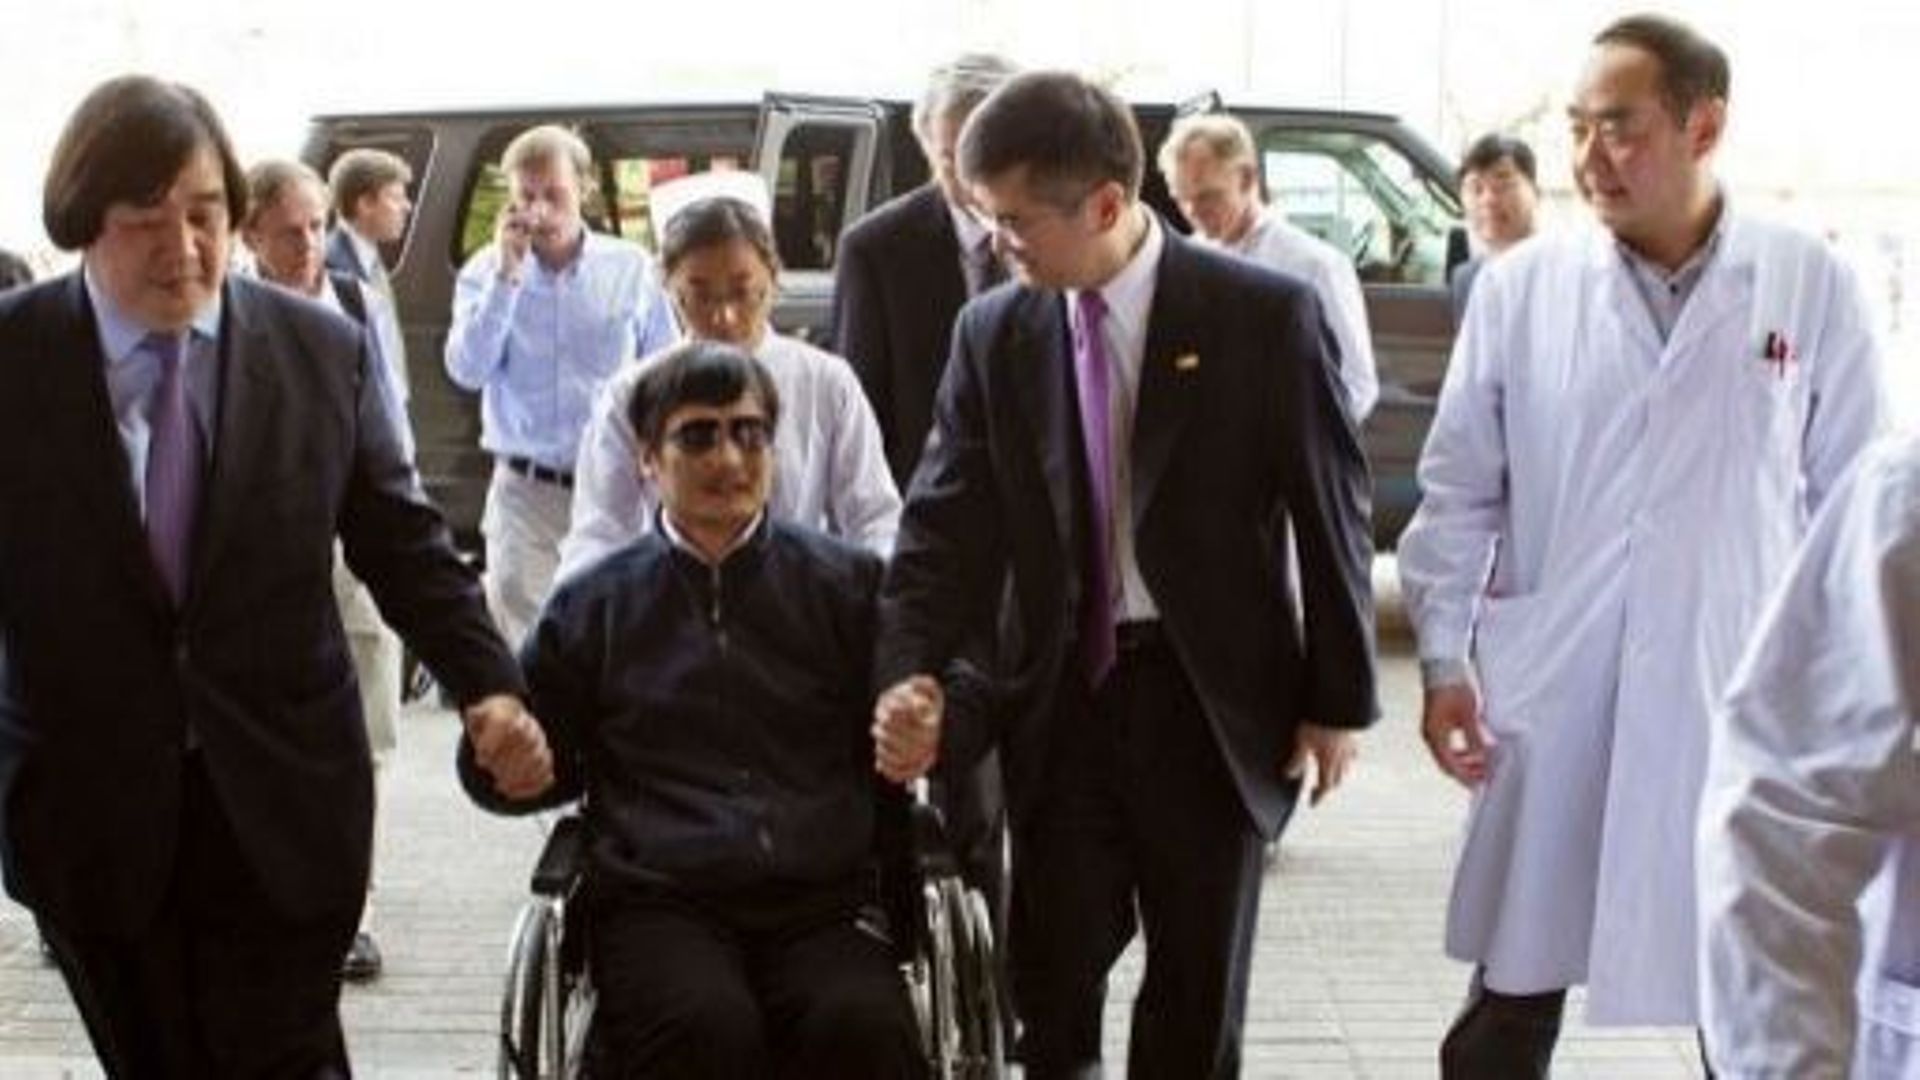 Le militant des droits civiques, Chang Guangcheng (C), accompagné de l'ambassadeur américain à Pékin, Gary Locke (D), le 2 mai 2012 à Pékin